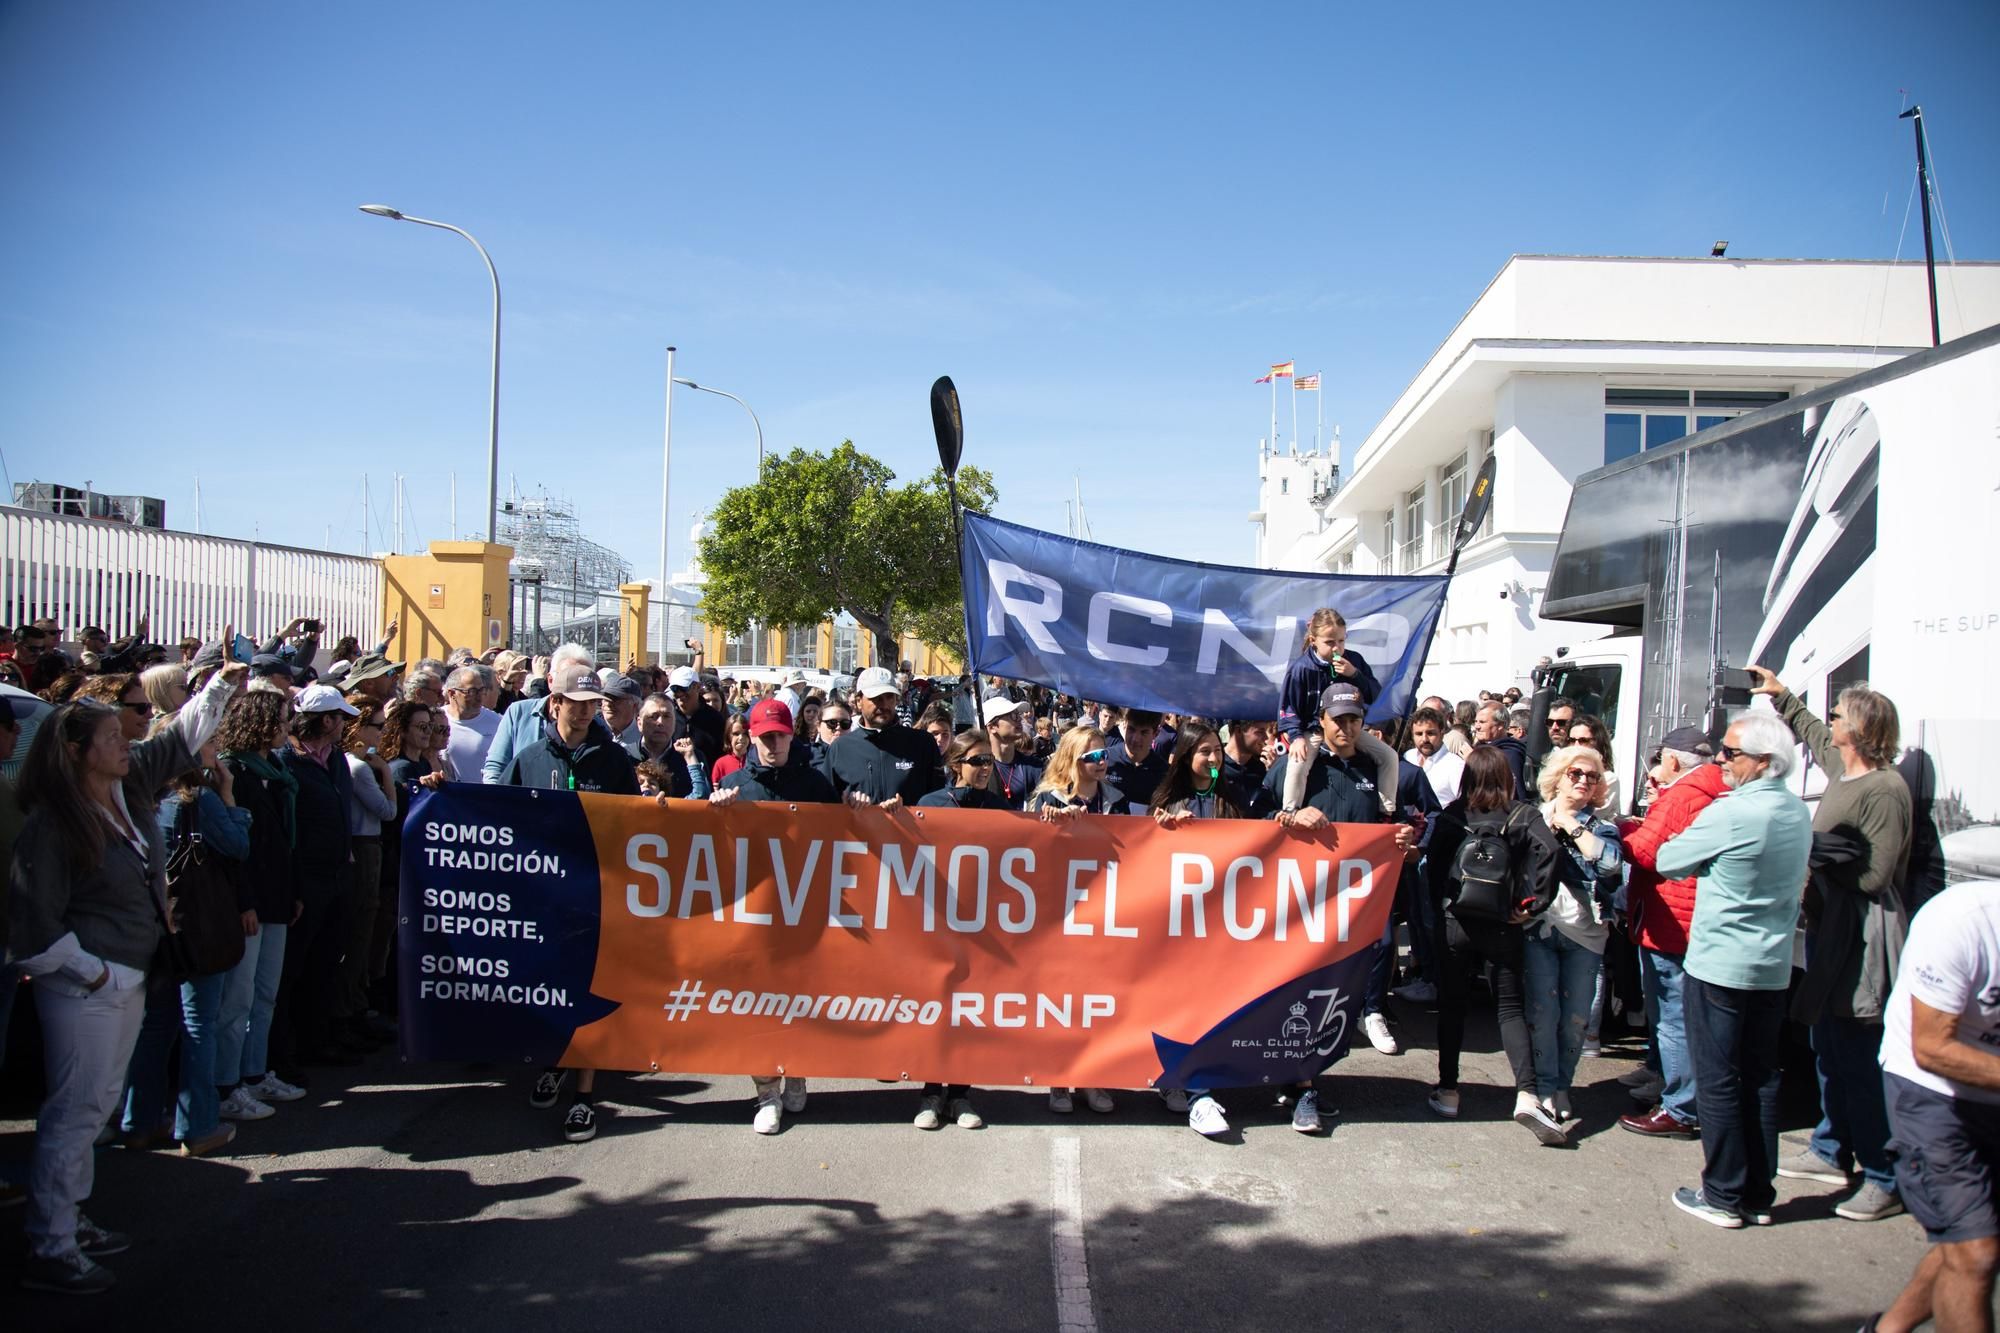 Real Club Náutico demonstriert gegen drohende Neuausschreibung